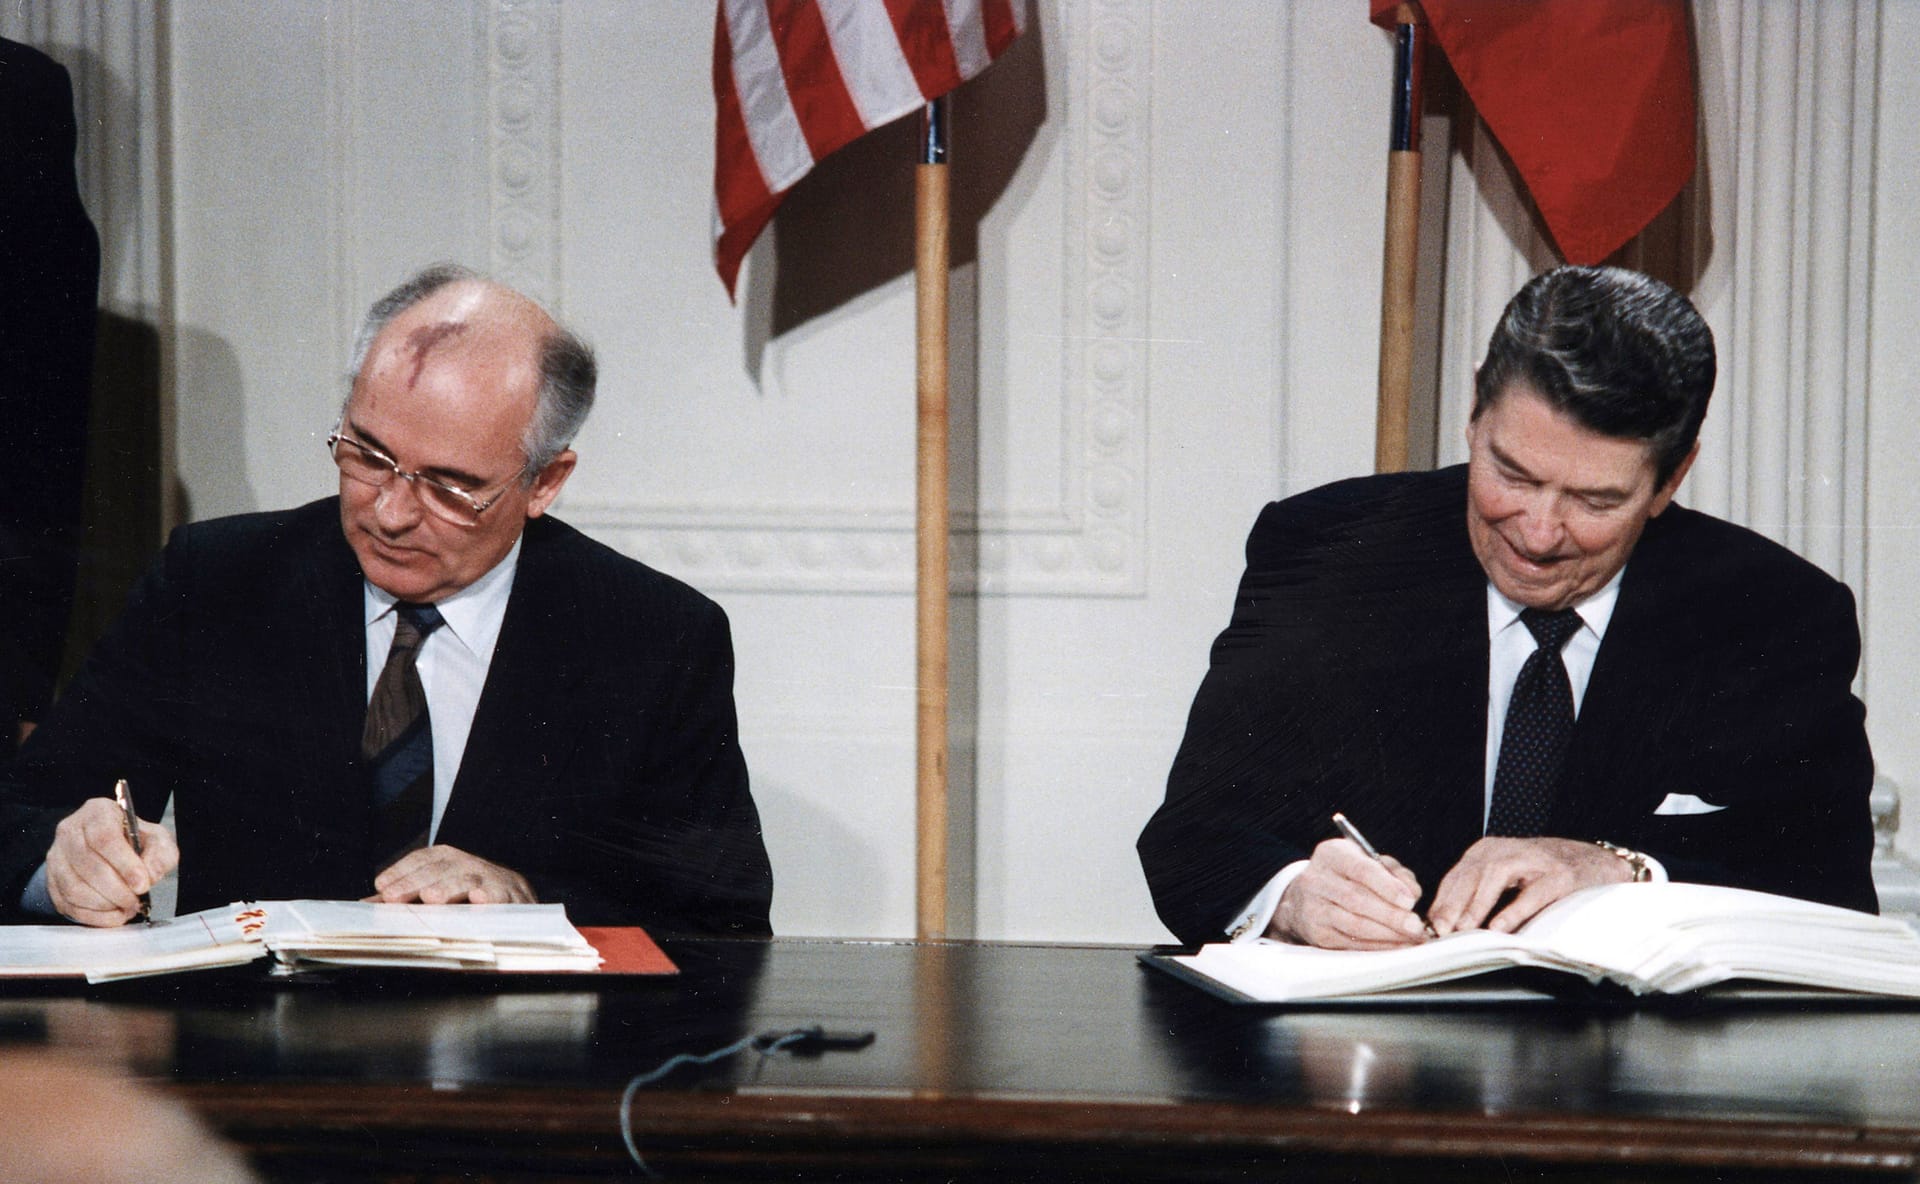 Michail Gorbatschow und der damalige US-Präsident Ronald Reagan setzen mit ihrer Unterschrift 1987 den INF-Vertrag in Kraft – ein Abkommen über Lang- und Mittsreckenraketen.